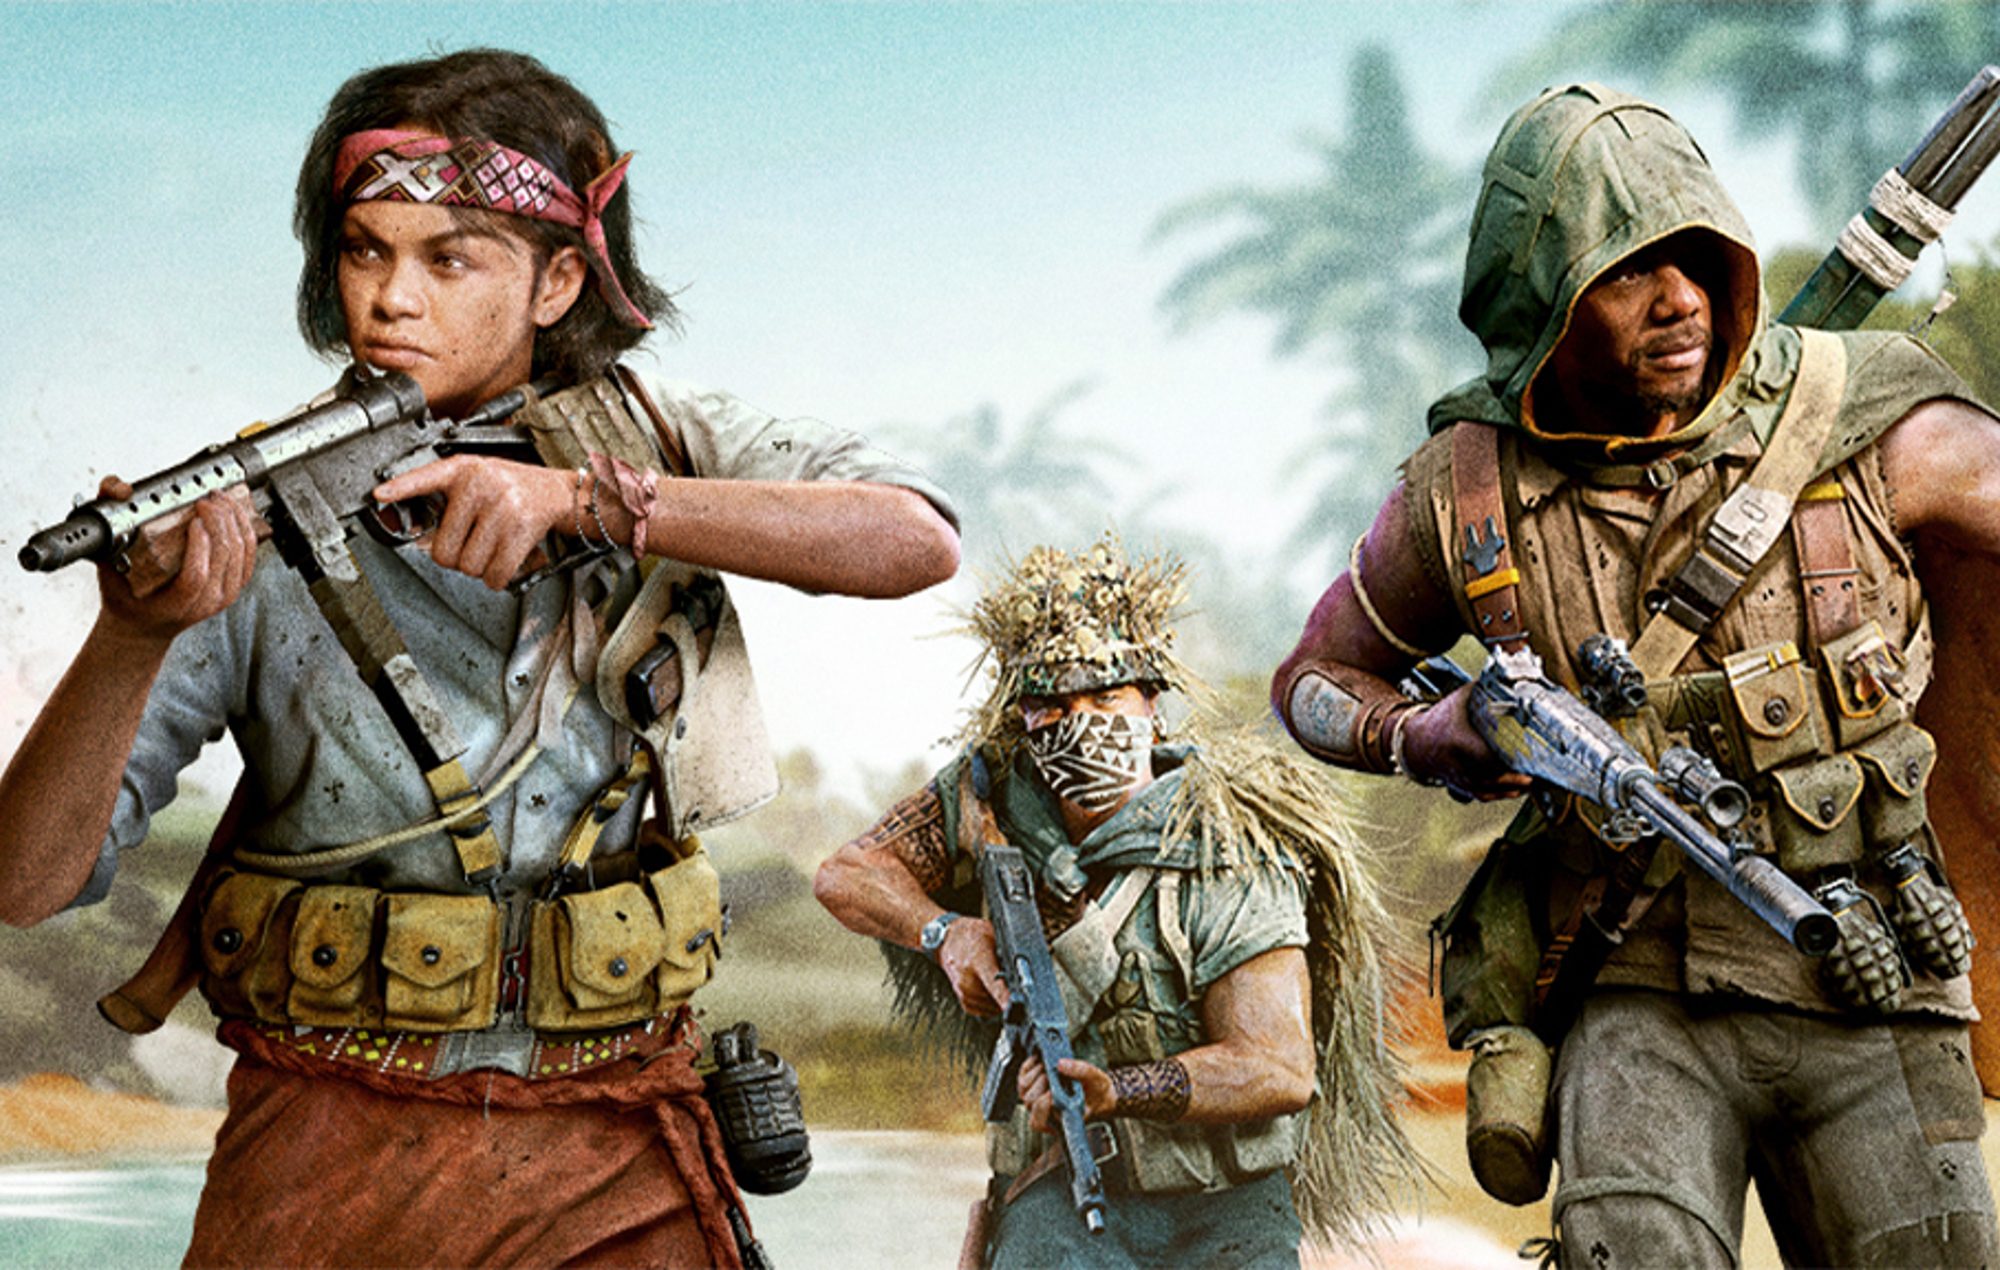 Call of Duty: Warzone – jogo original encerrará os servidores e